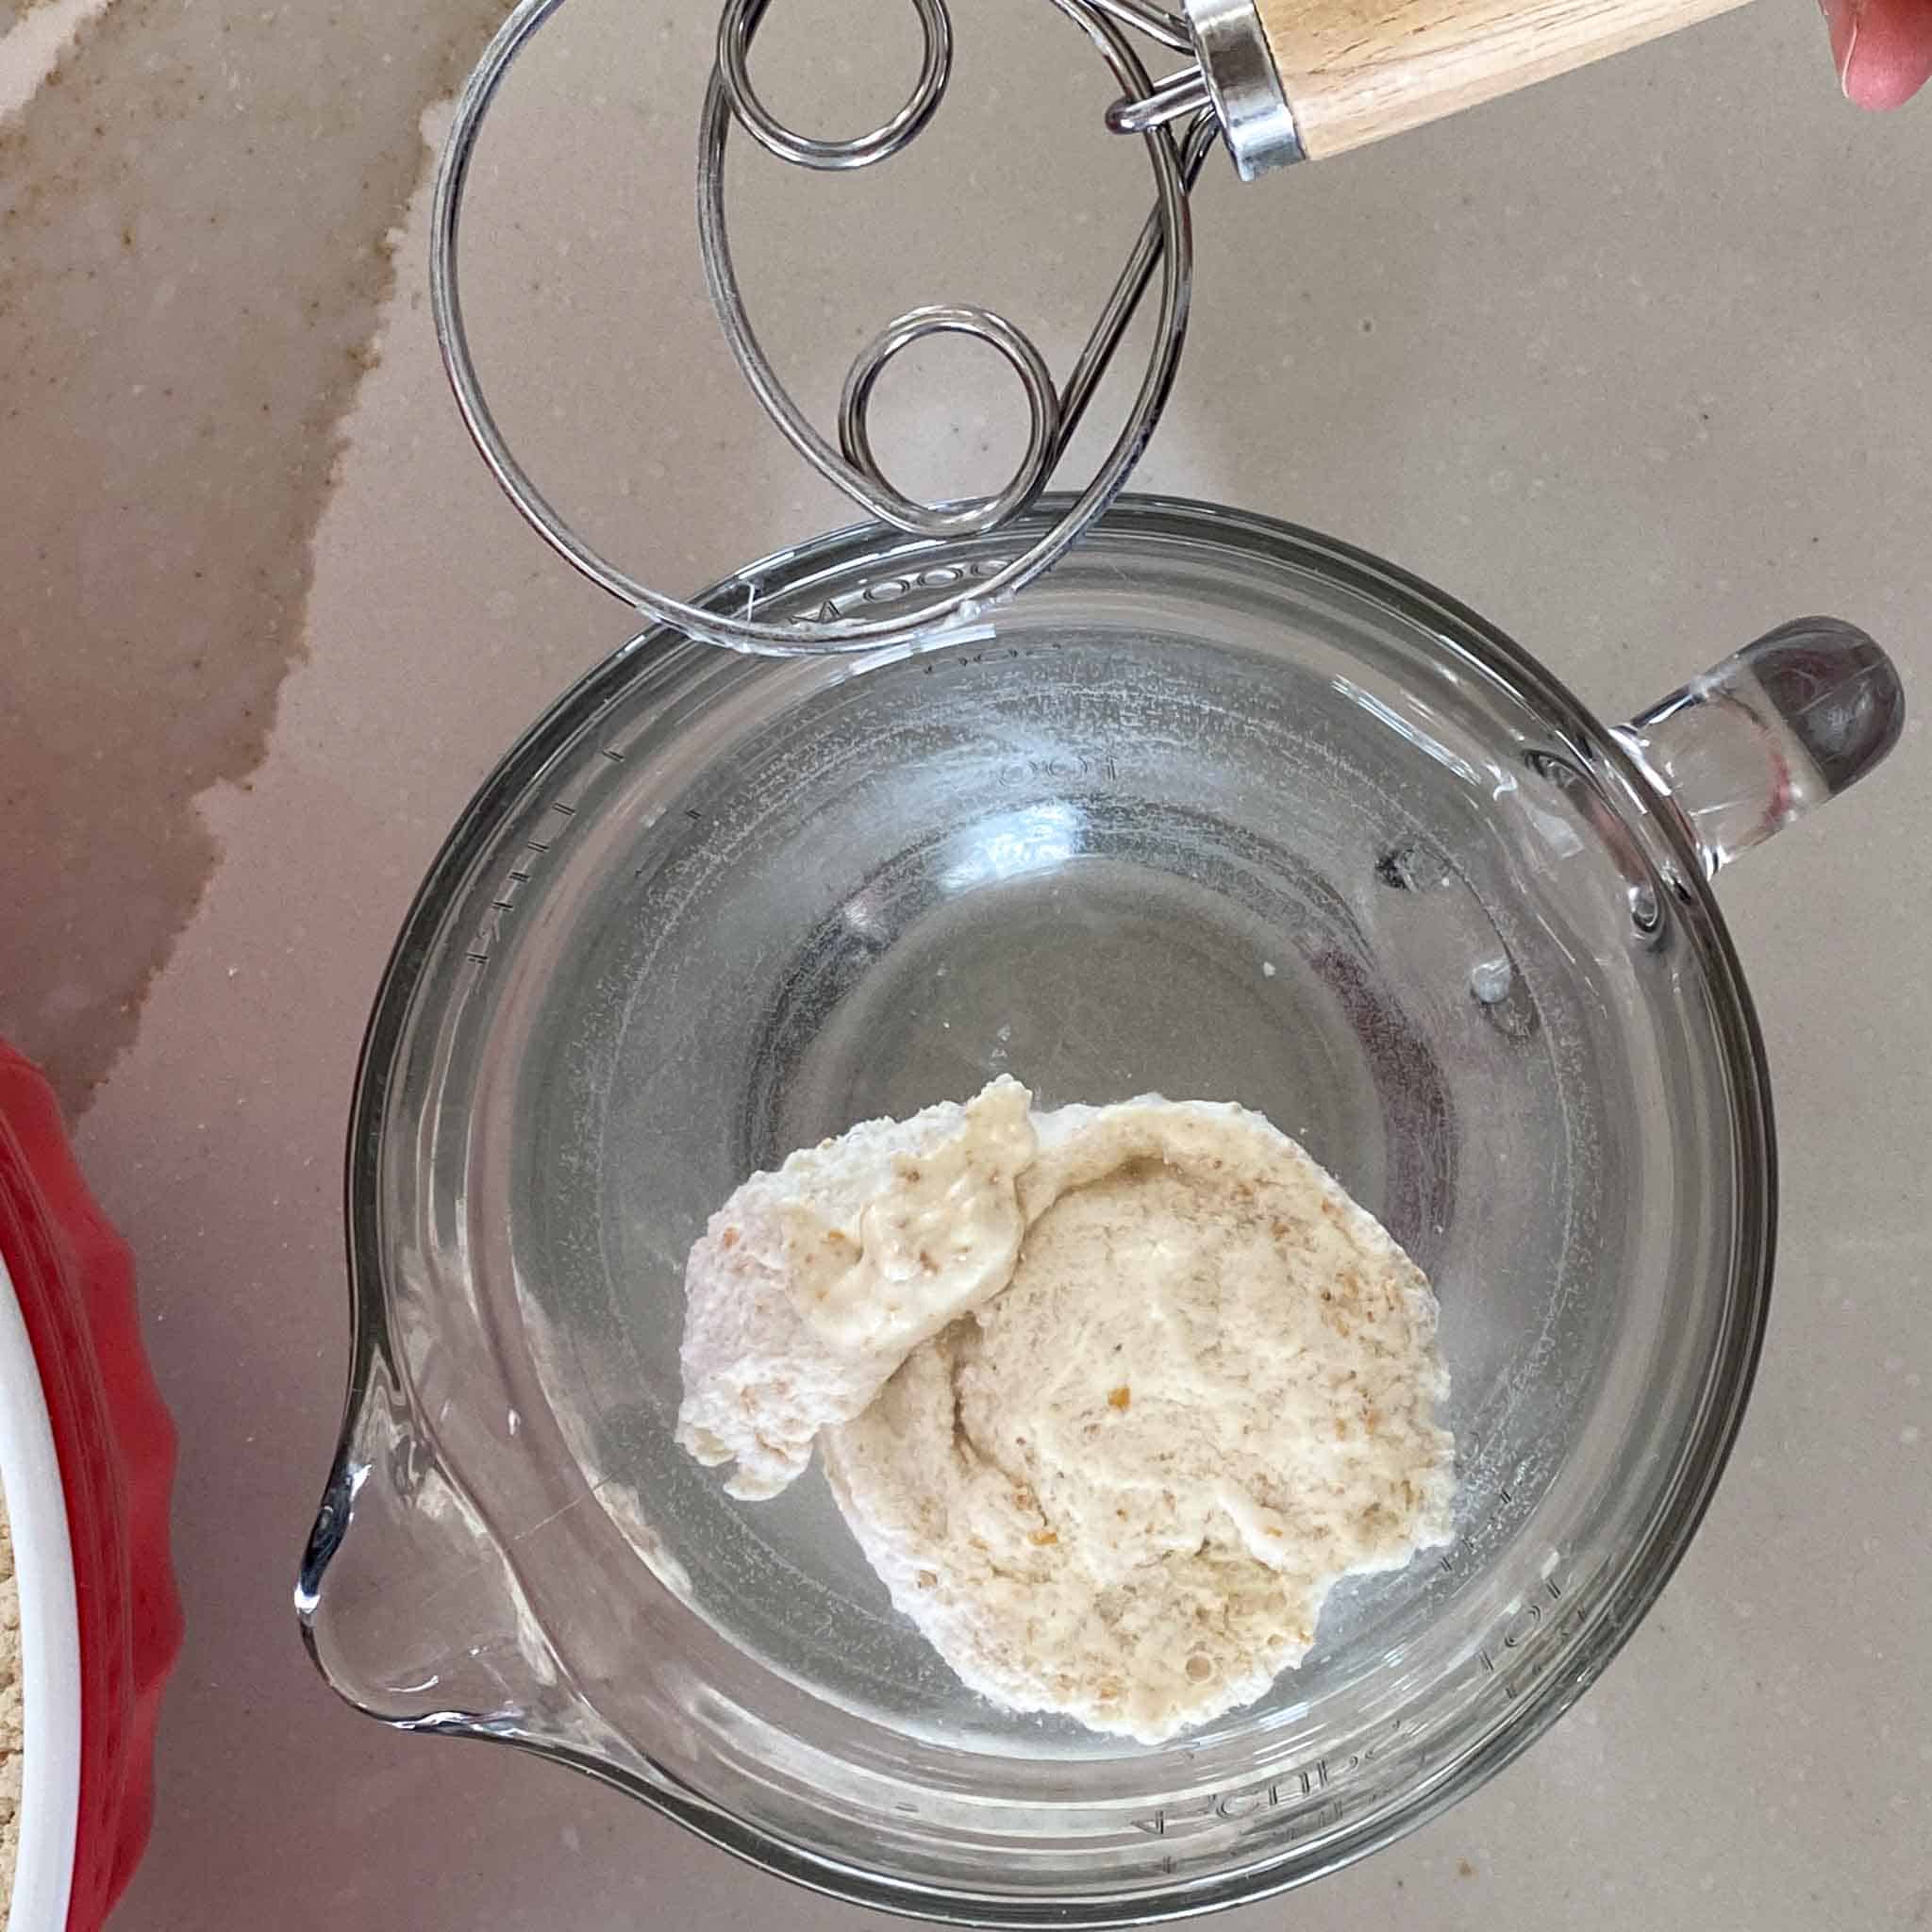 Whole grain sourdough starter floating in water.